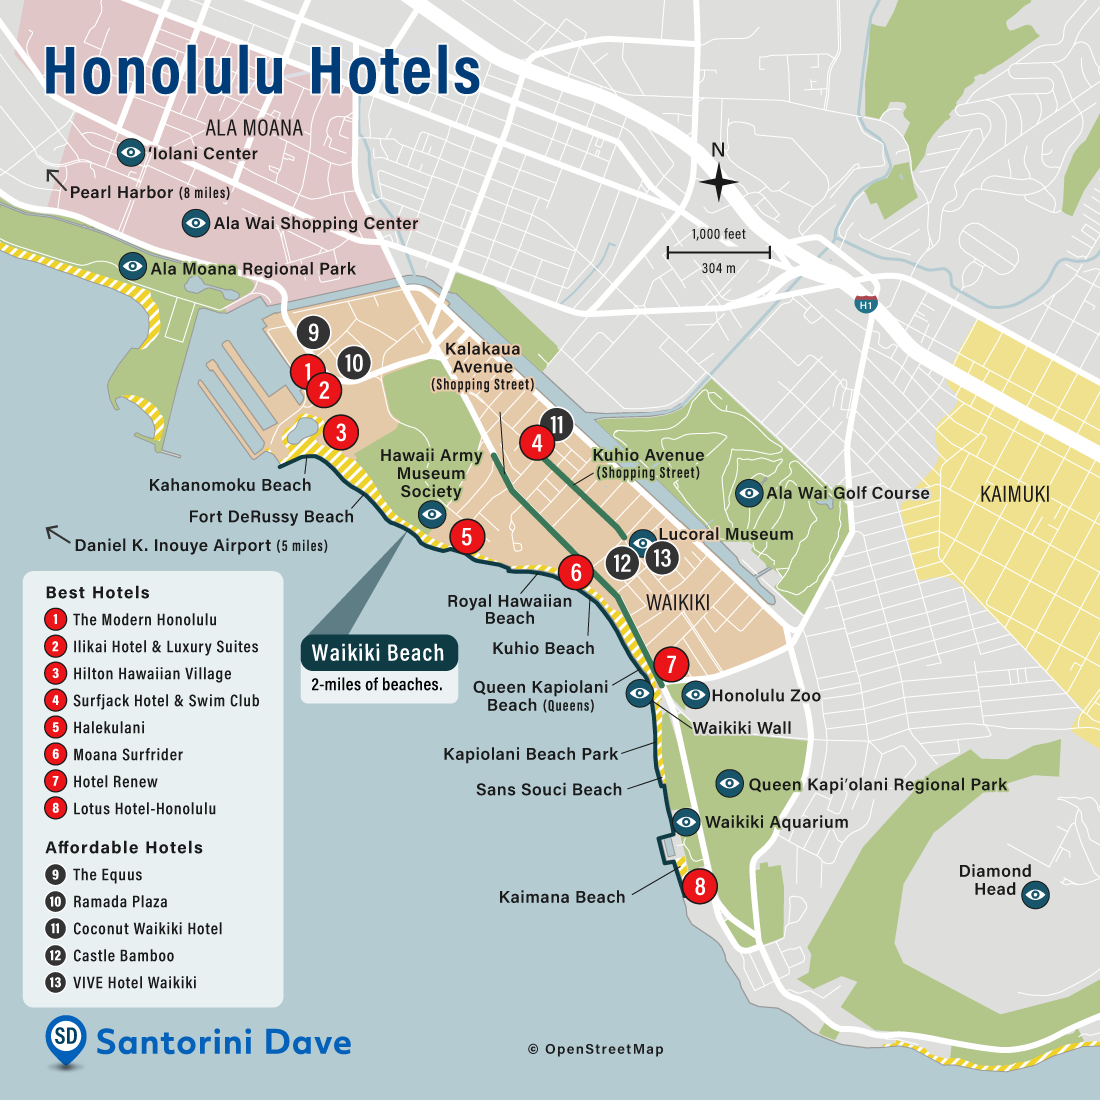 Map of Honolulu Hotels and Neighborhoods.